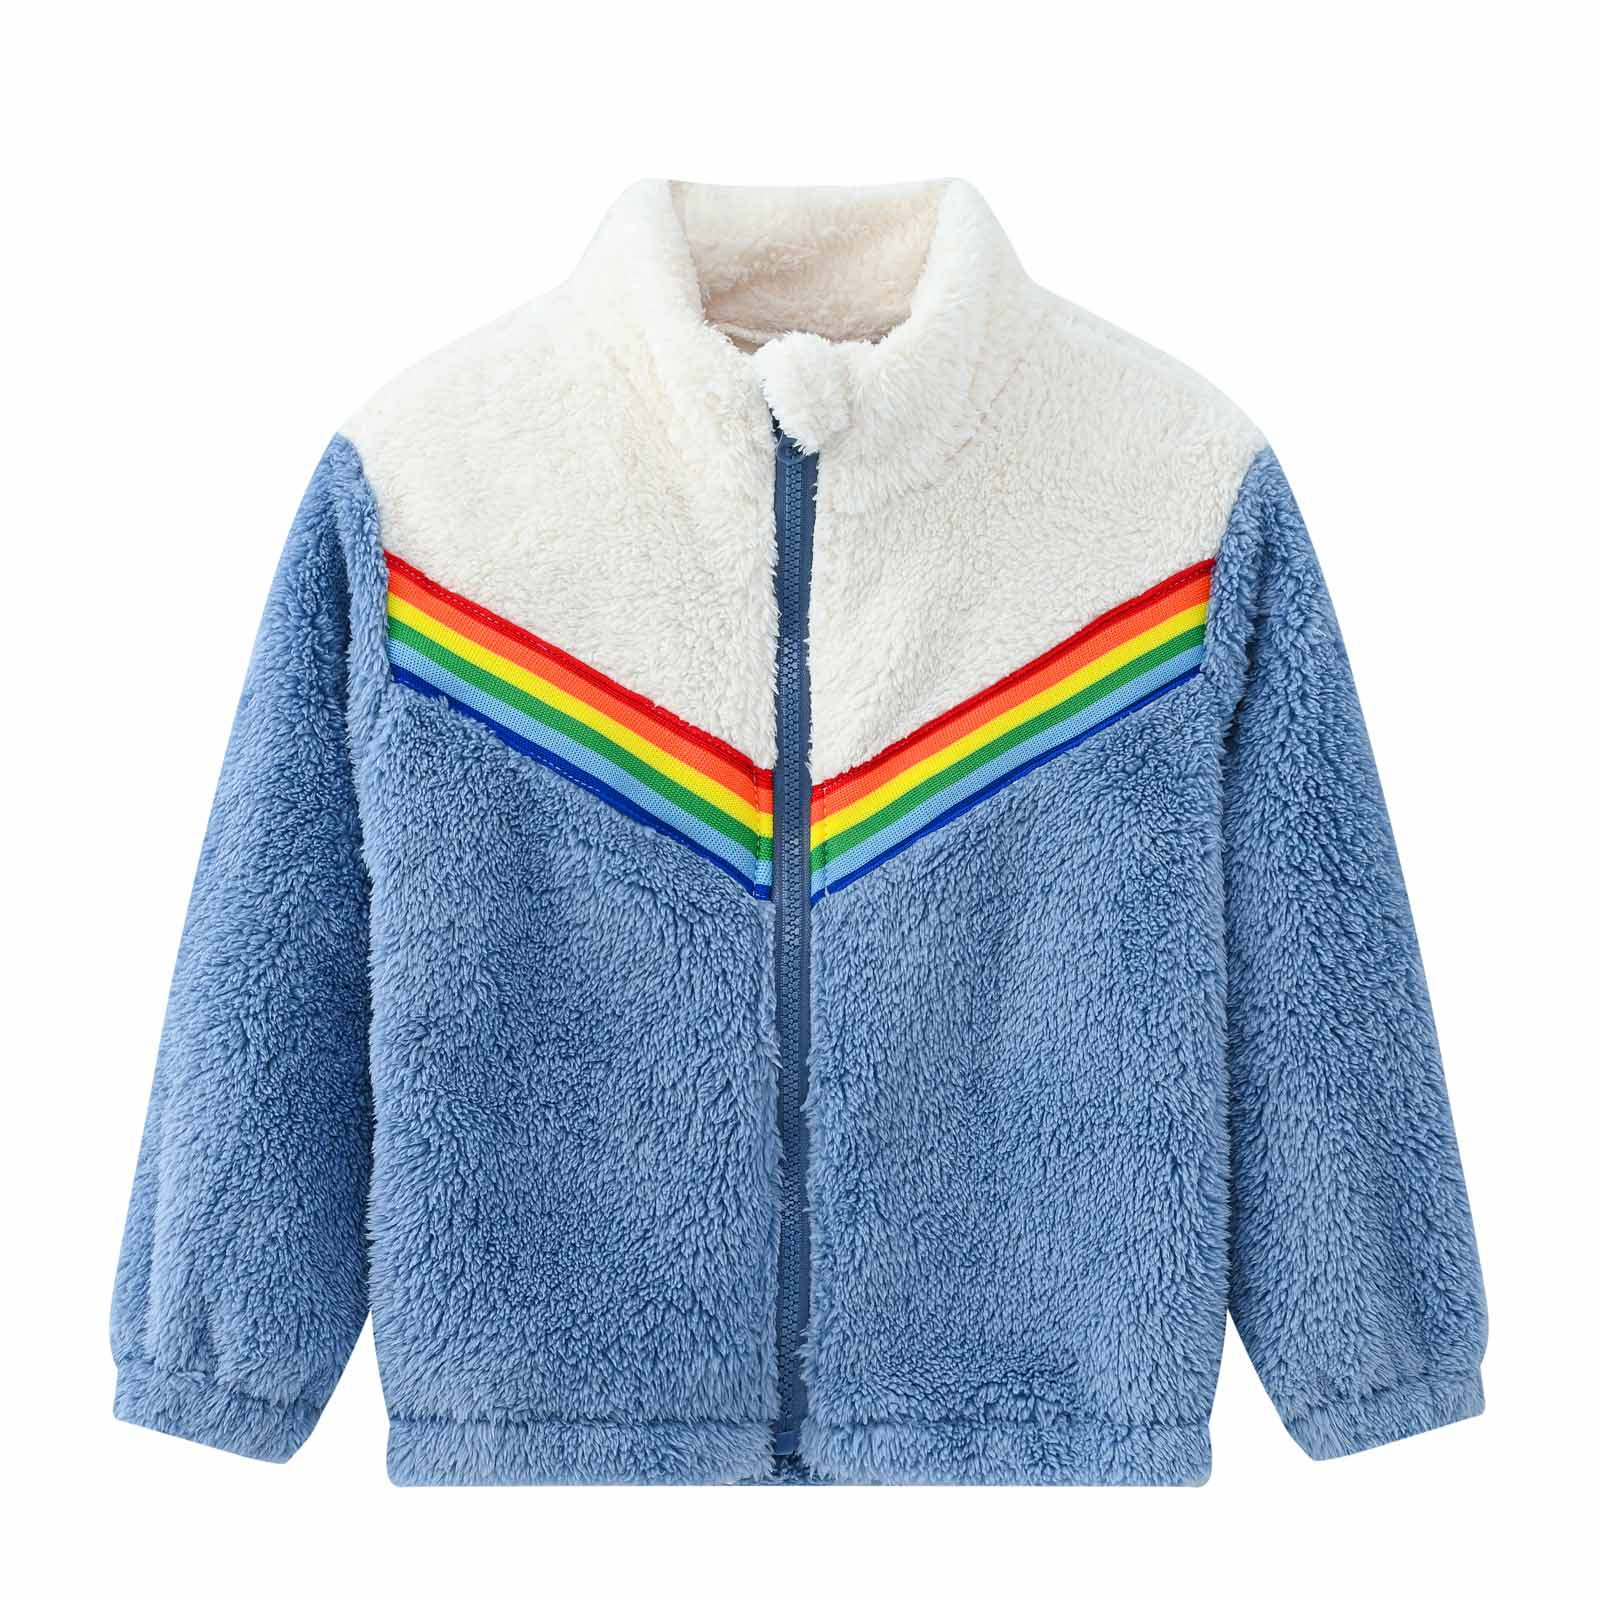 YYDGH Girls Zipper Jacket Fuzzy Sweatshirt Long Sleeve Casual Cozy Fleece Sherpa Outwear Coat Full-Zip Rainbow Jackets(Blue,4-5 Years) - image 1 of 8